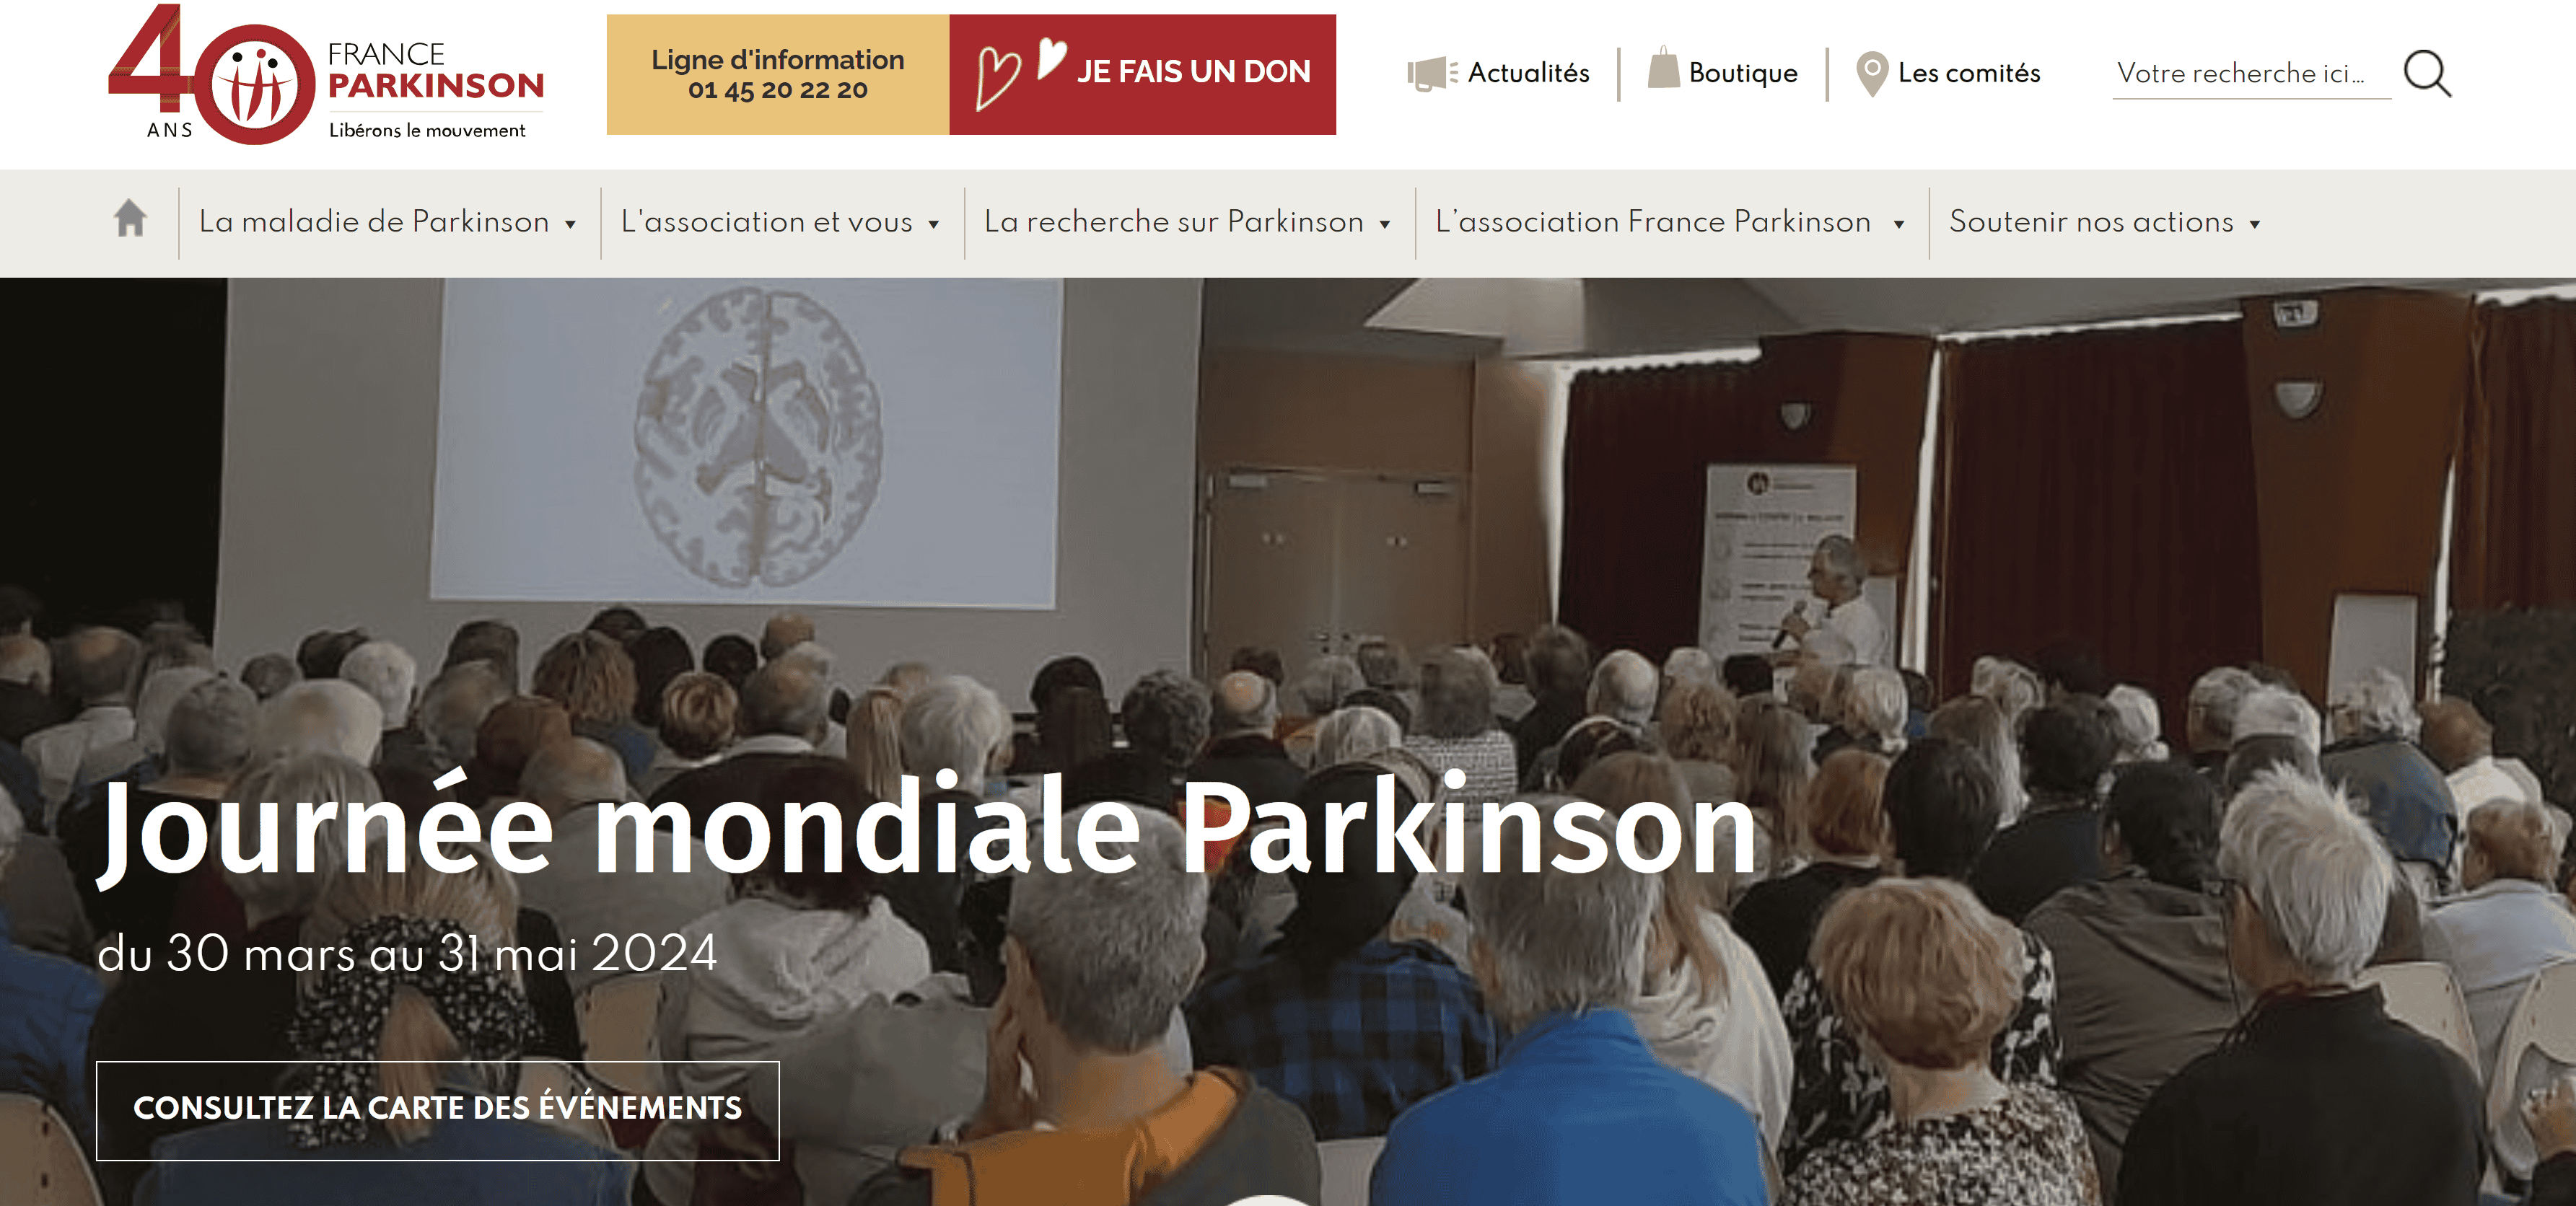 Journée mondiale Parkinson - France Parkinson